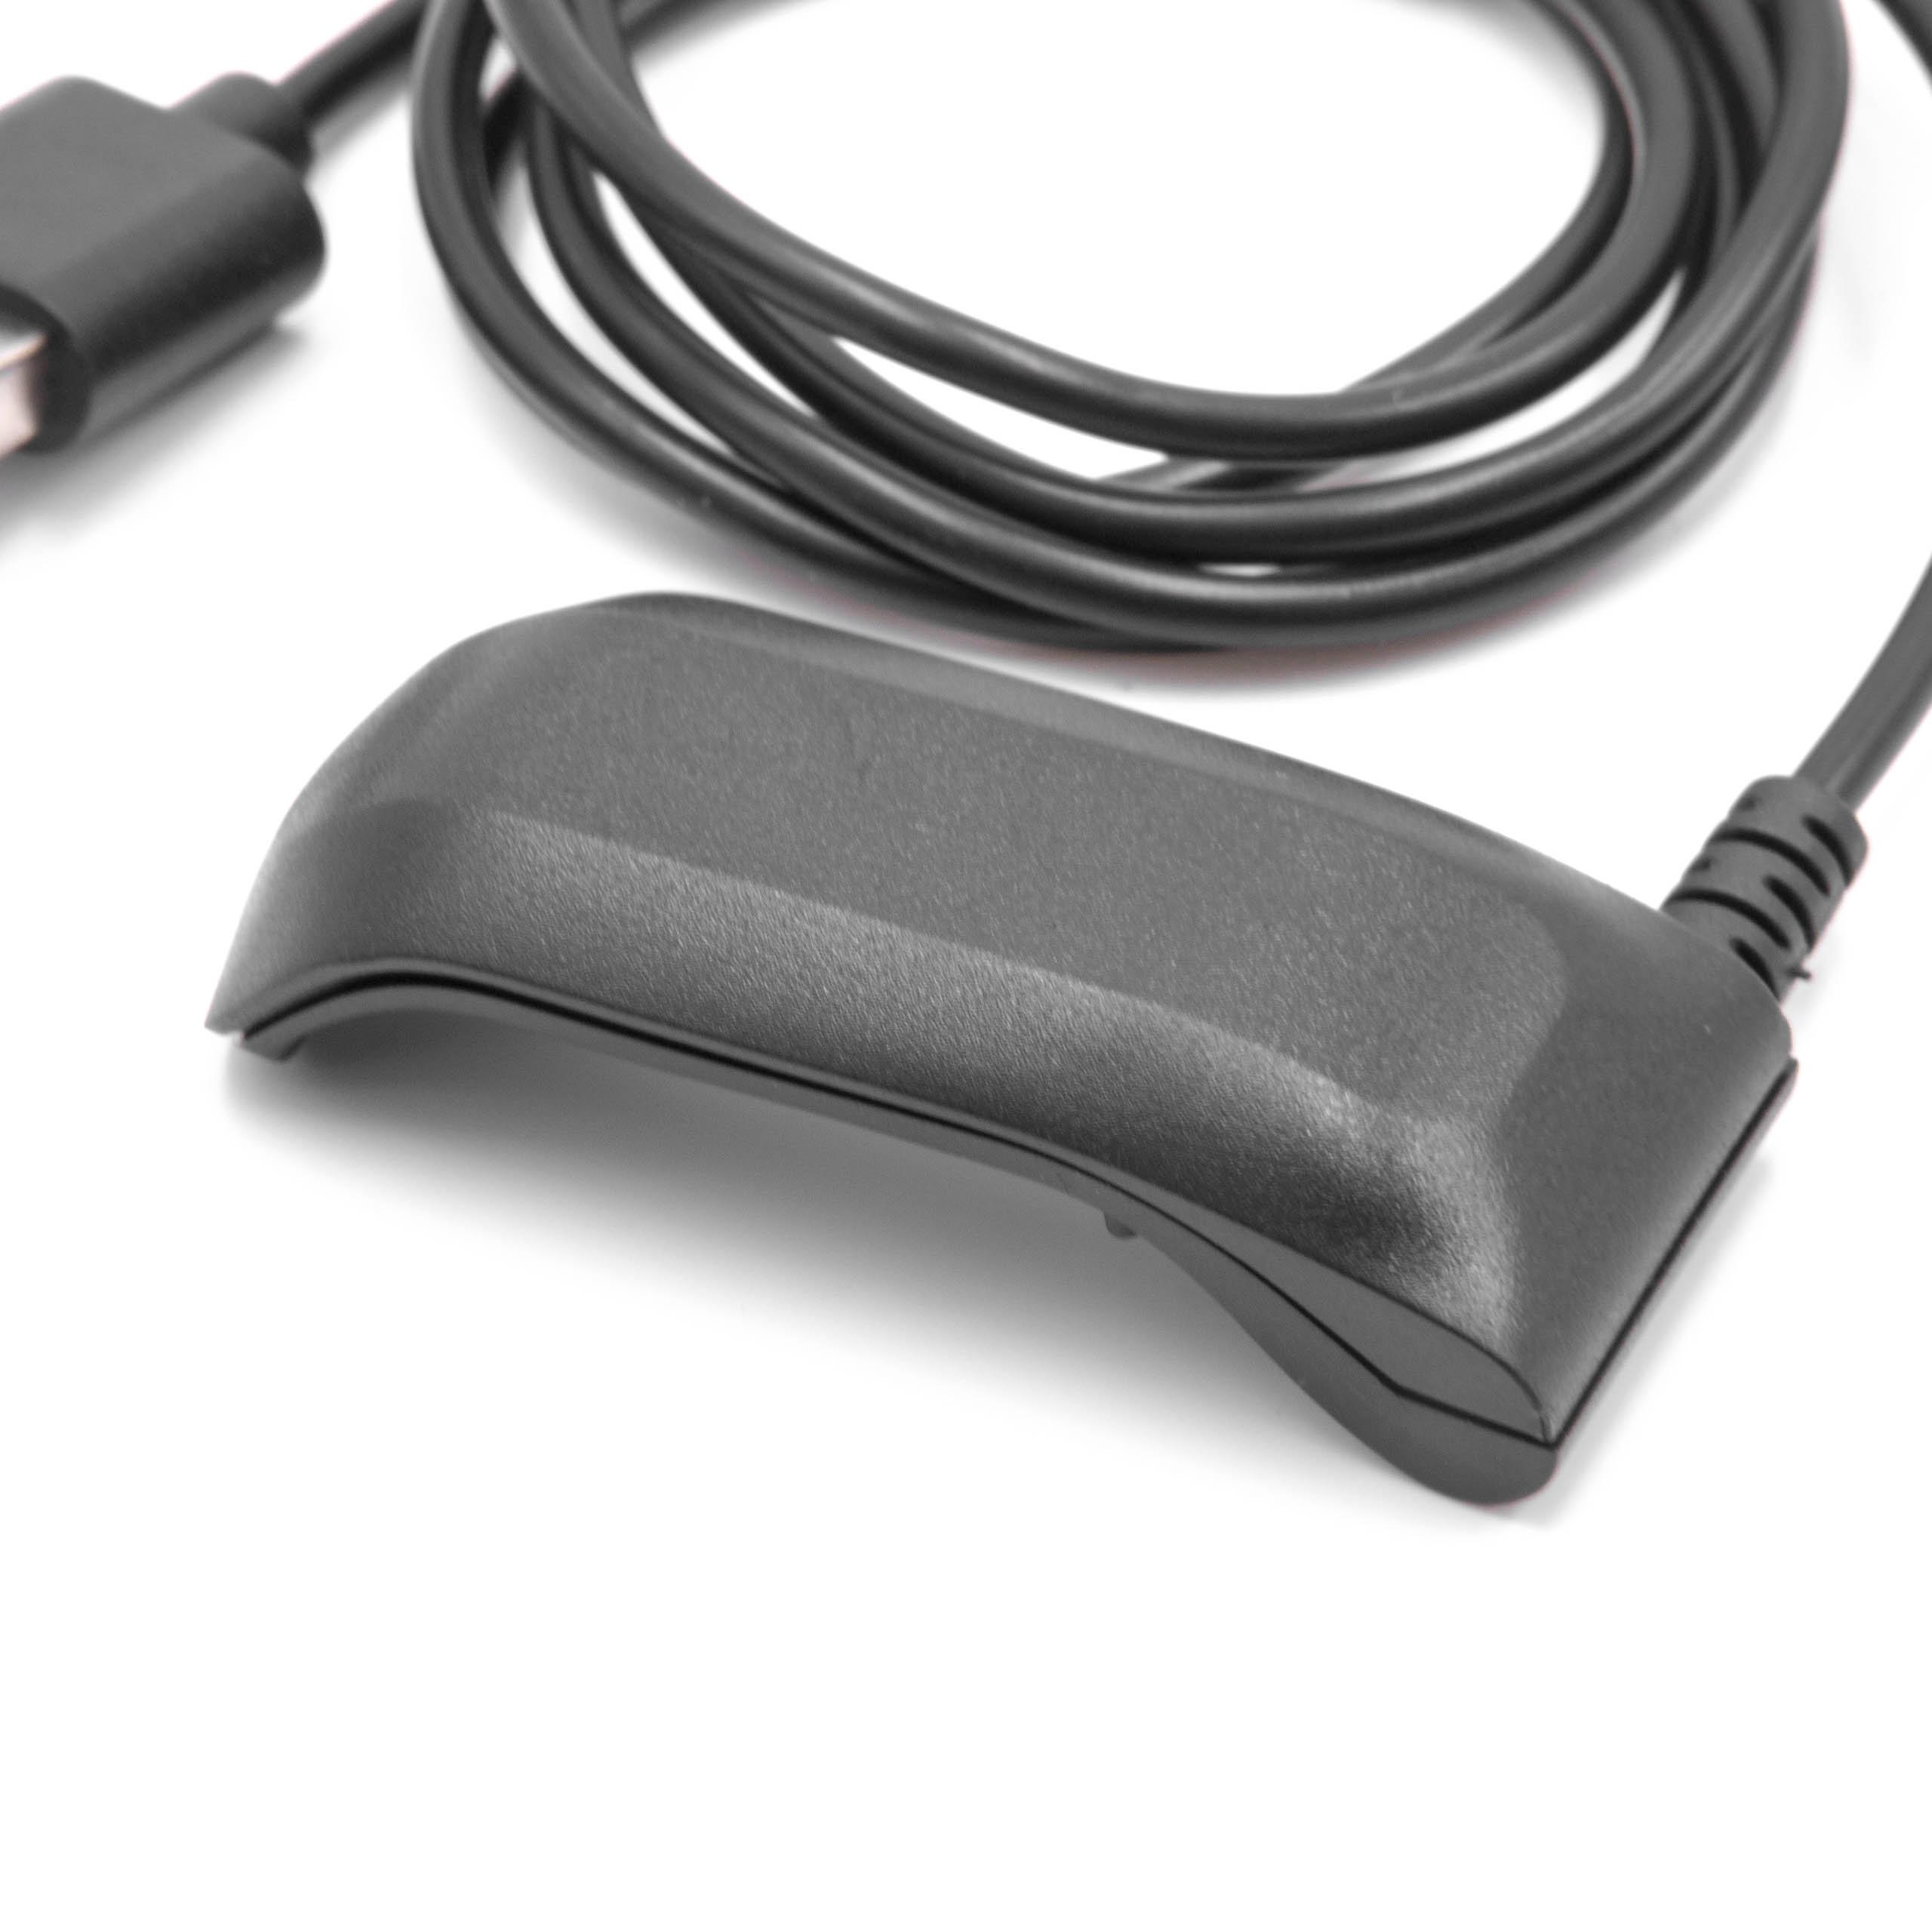 Station de charge pour bracelet d'activité Garmin Forerunner et autres – câble de 100 cm, fiche USB